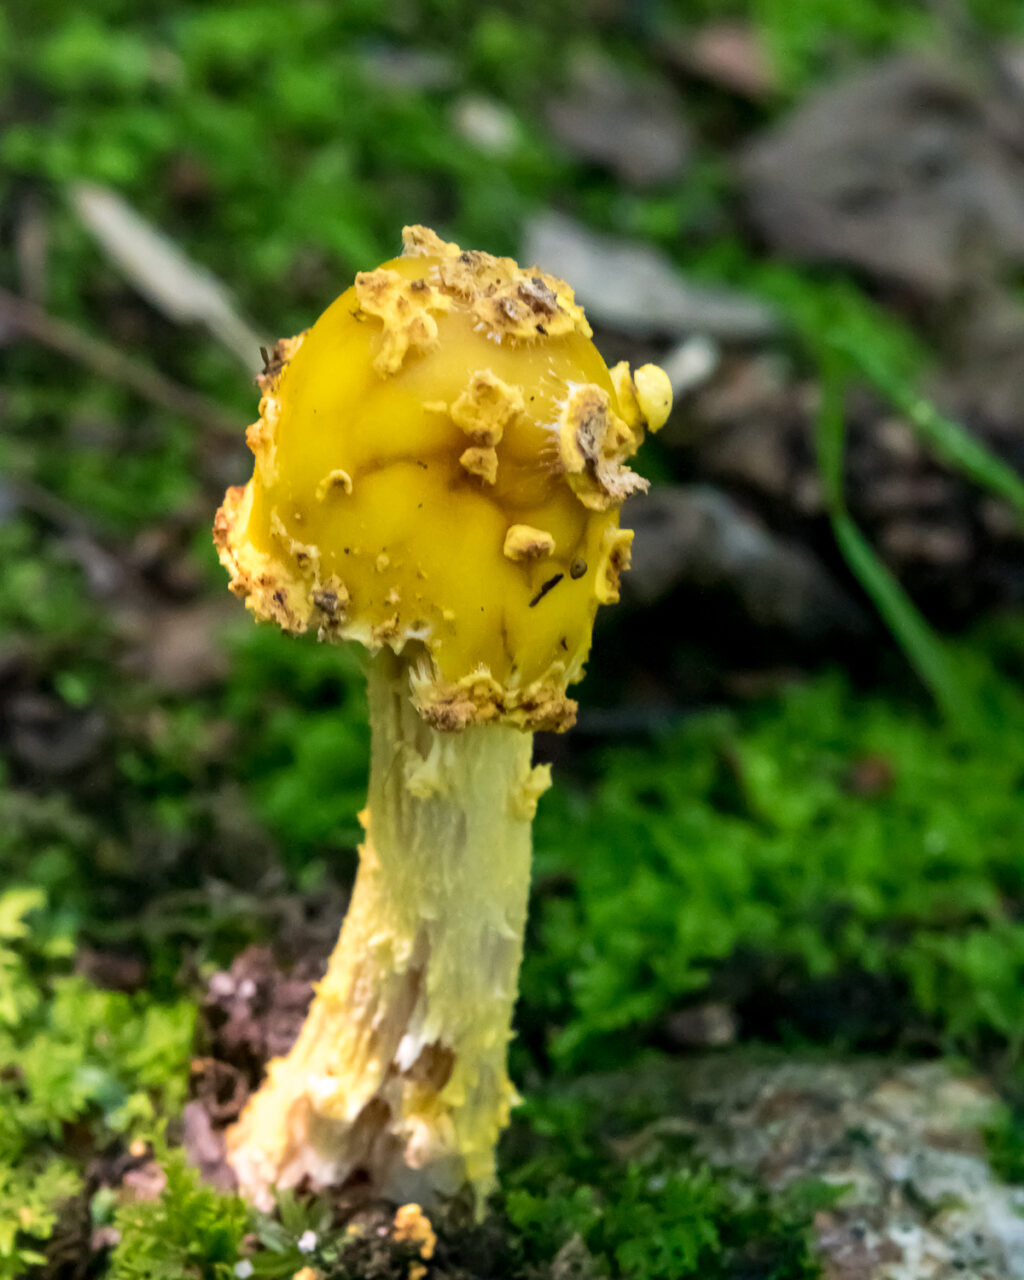 Yellow mushroom with yellow stalk